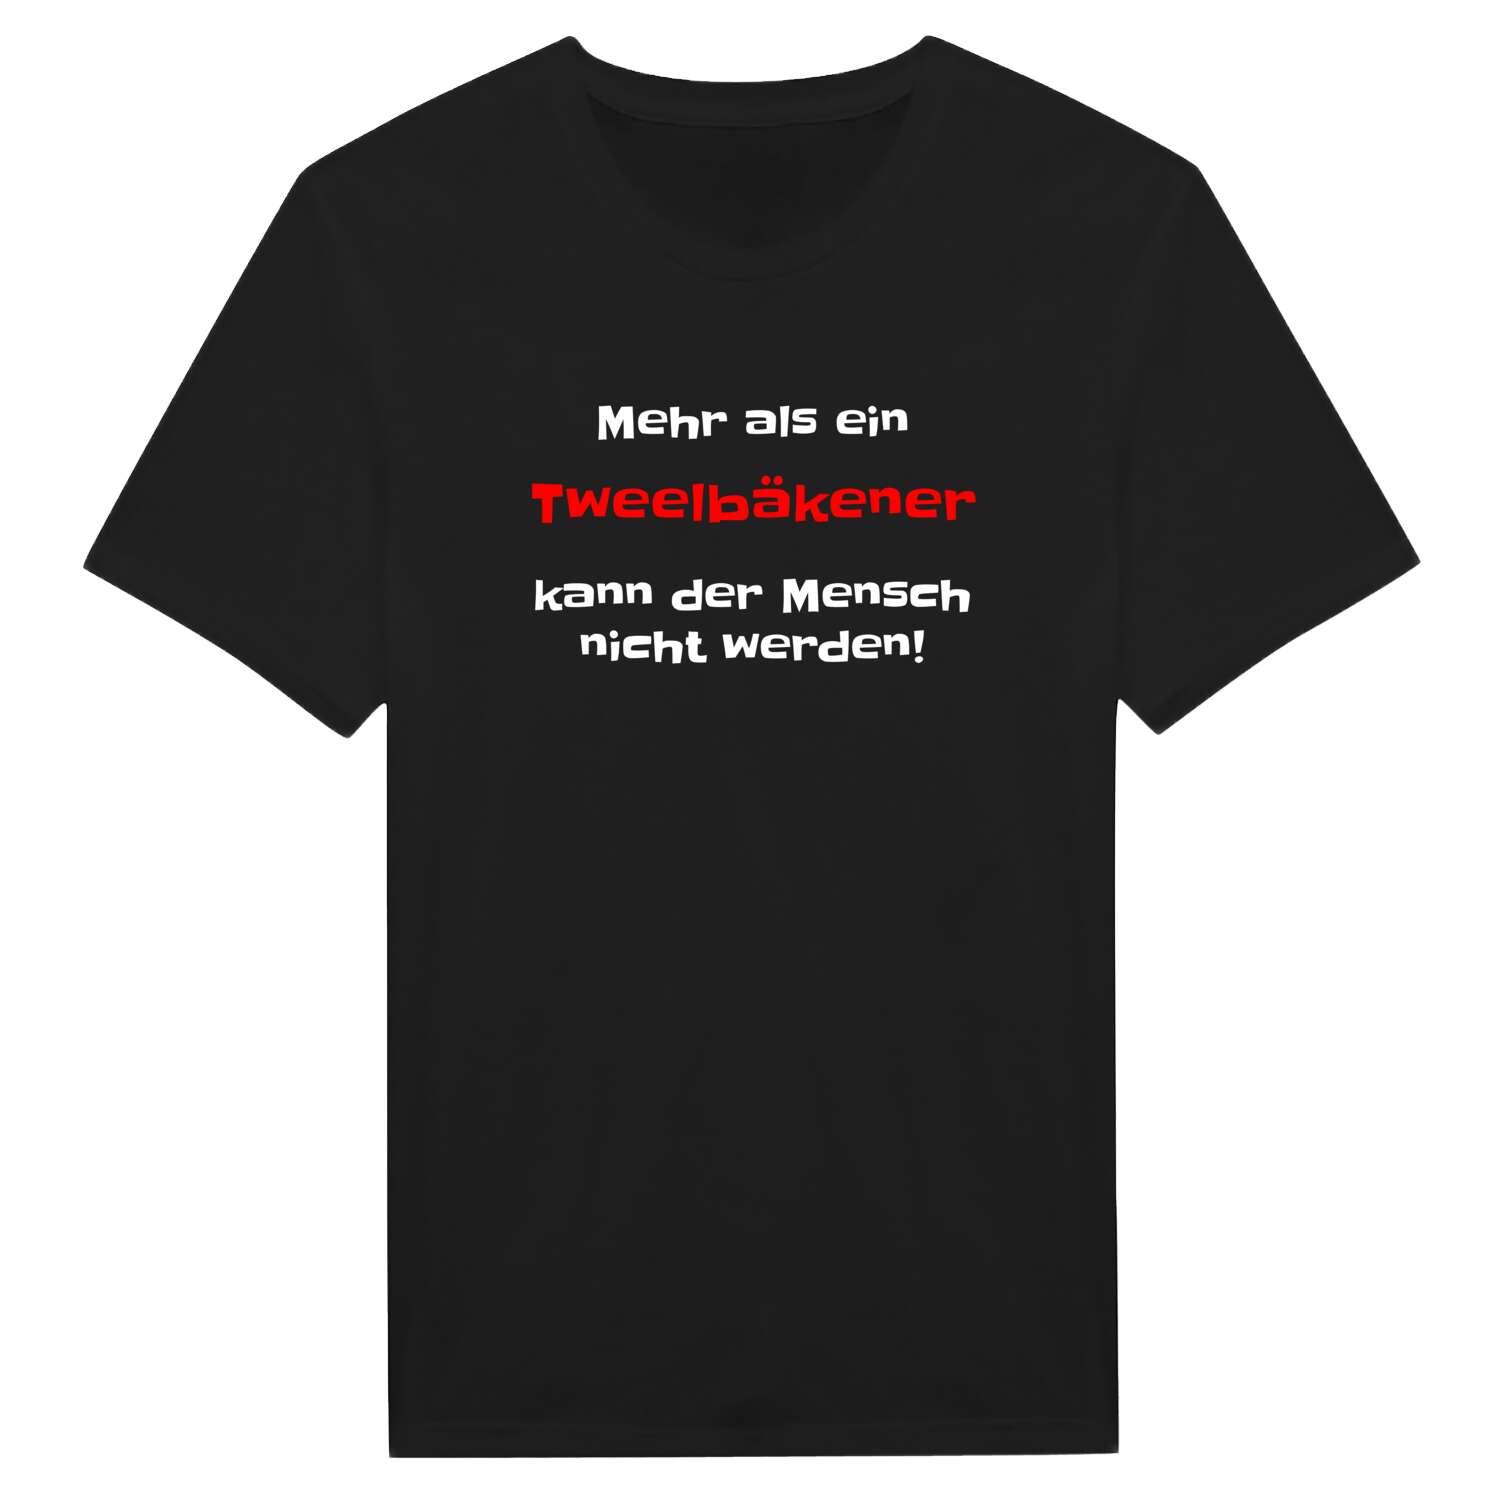 Tweelbäke T-Shirt »Mehr als ein«